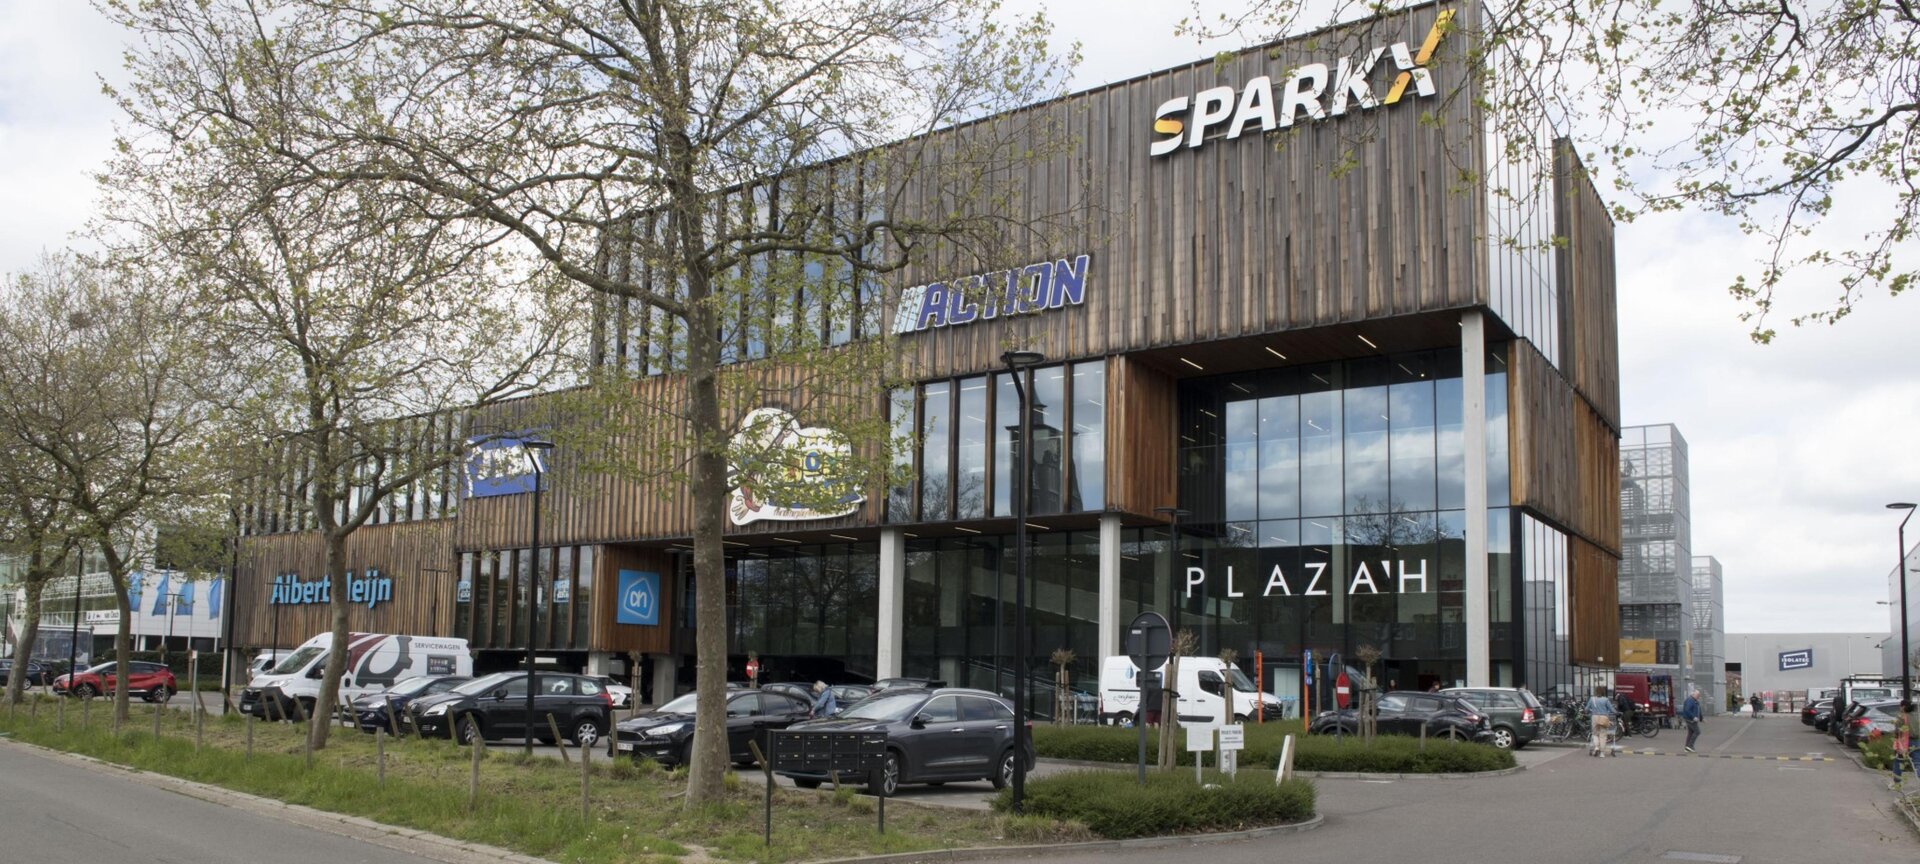 Sparkx Hasselt - Buitenkant gebouw